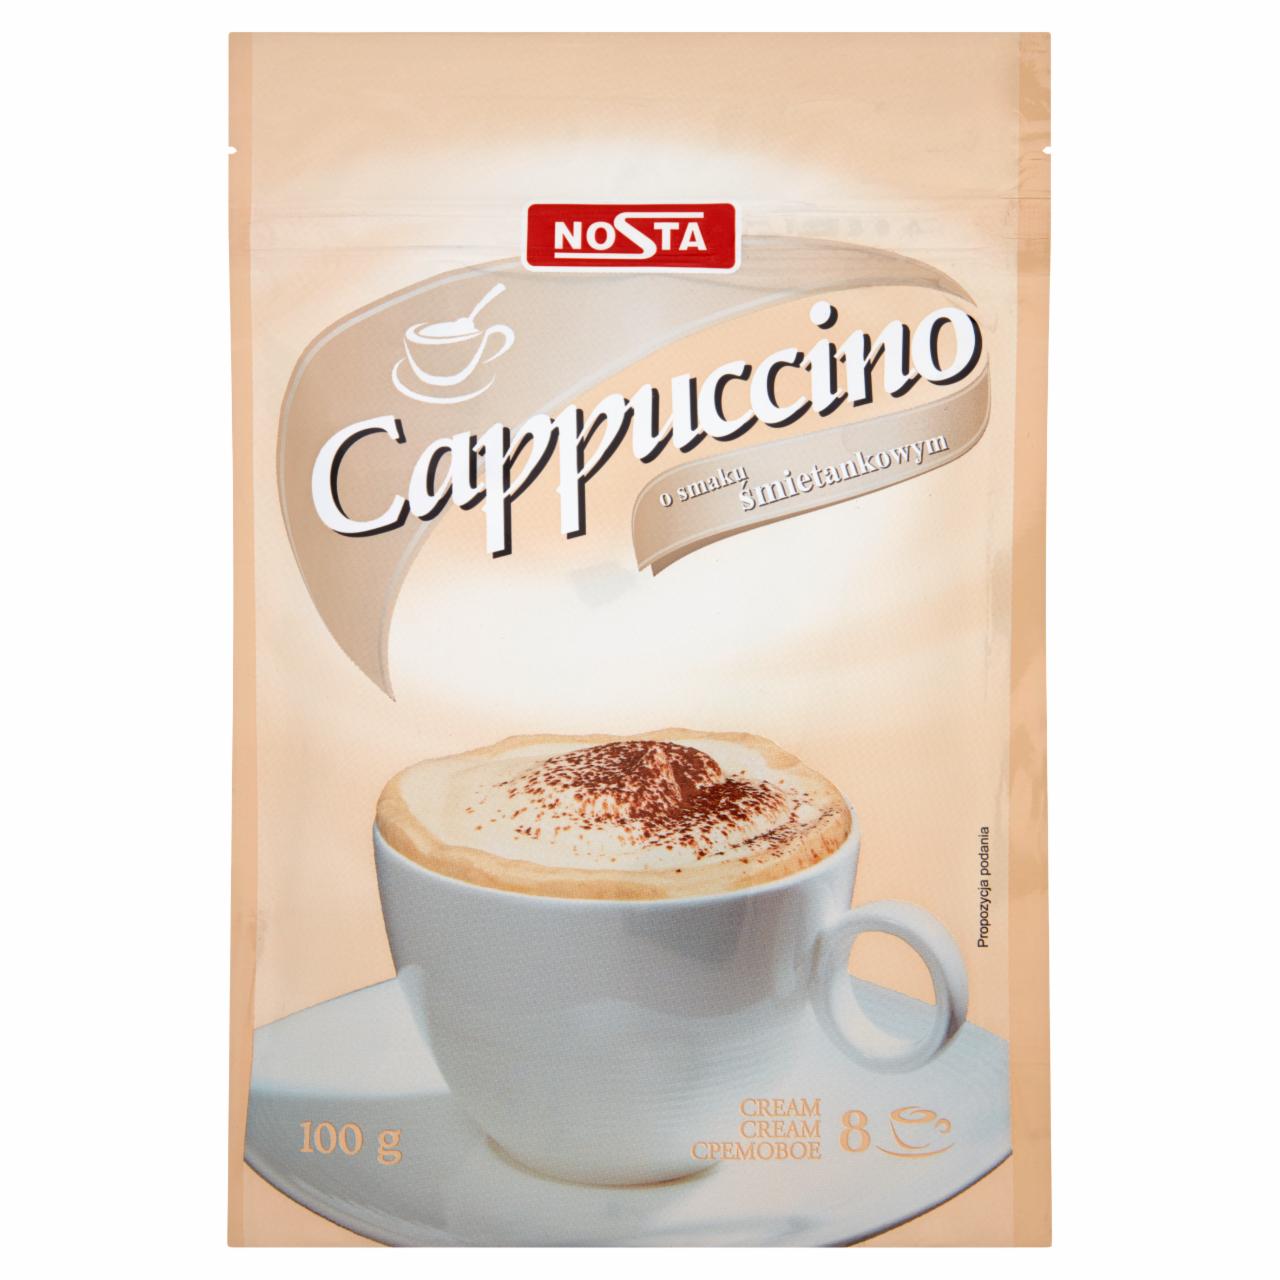 Képek - Cappuccino cream Nosta